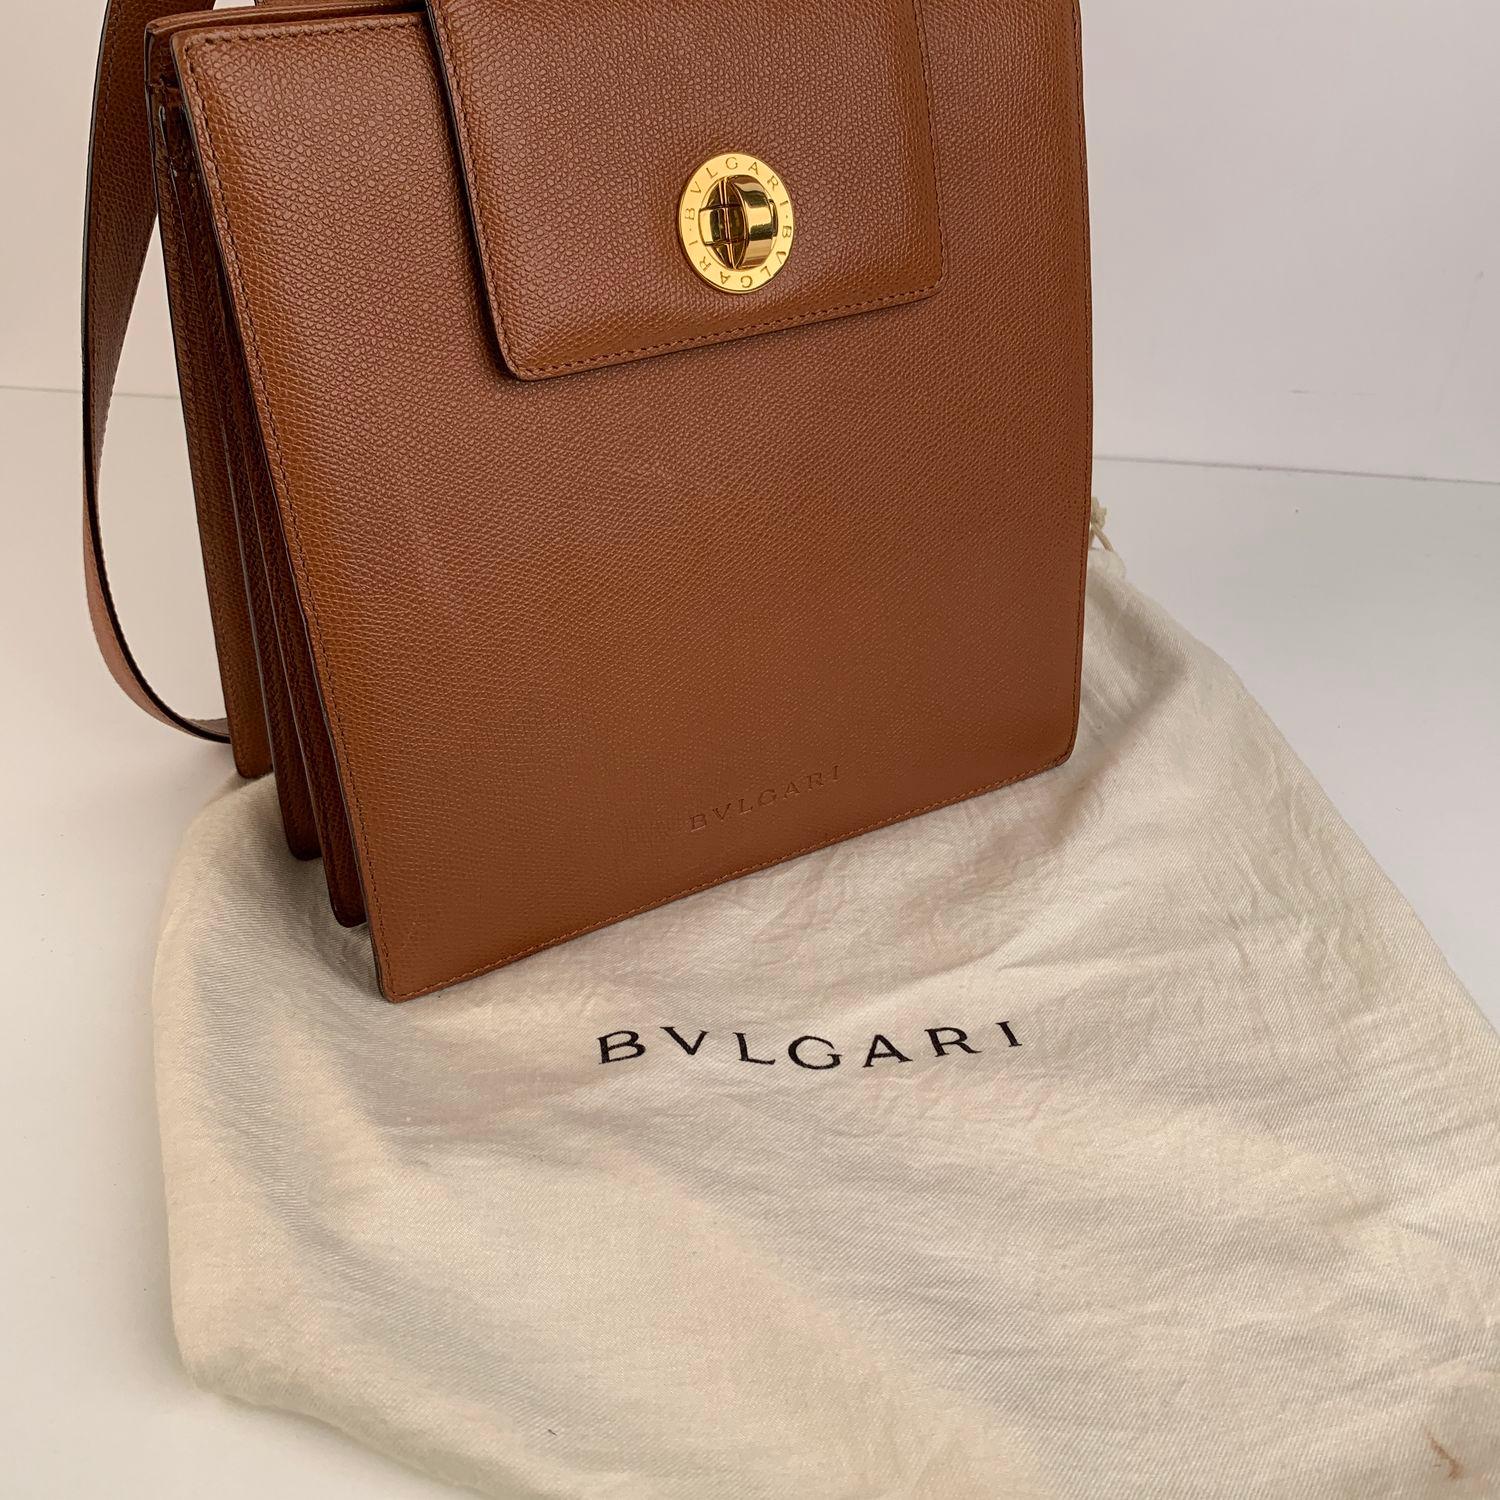 Bulgari Bvlgari Vintage Tan Leather Accordion Tote Shoulder Bag 3